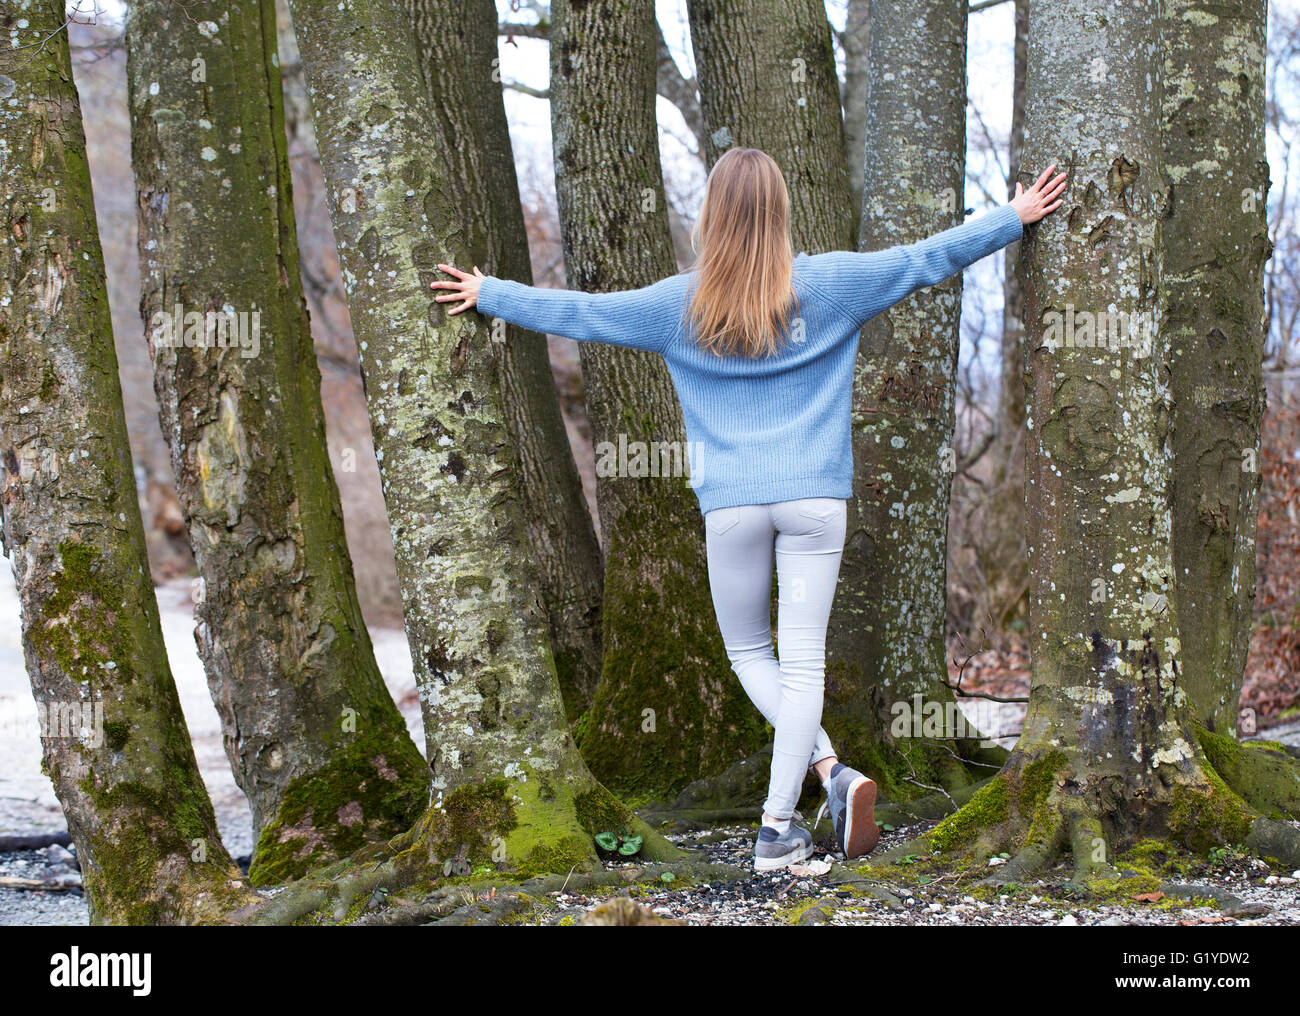 Jeune fille de derrière avec de longs cheveux blonds se penchant sur les arbres Banque D'Images